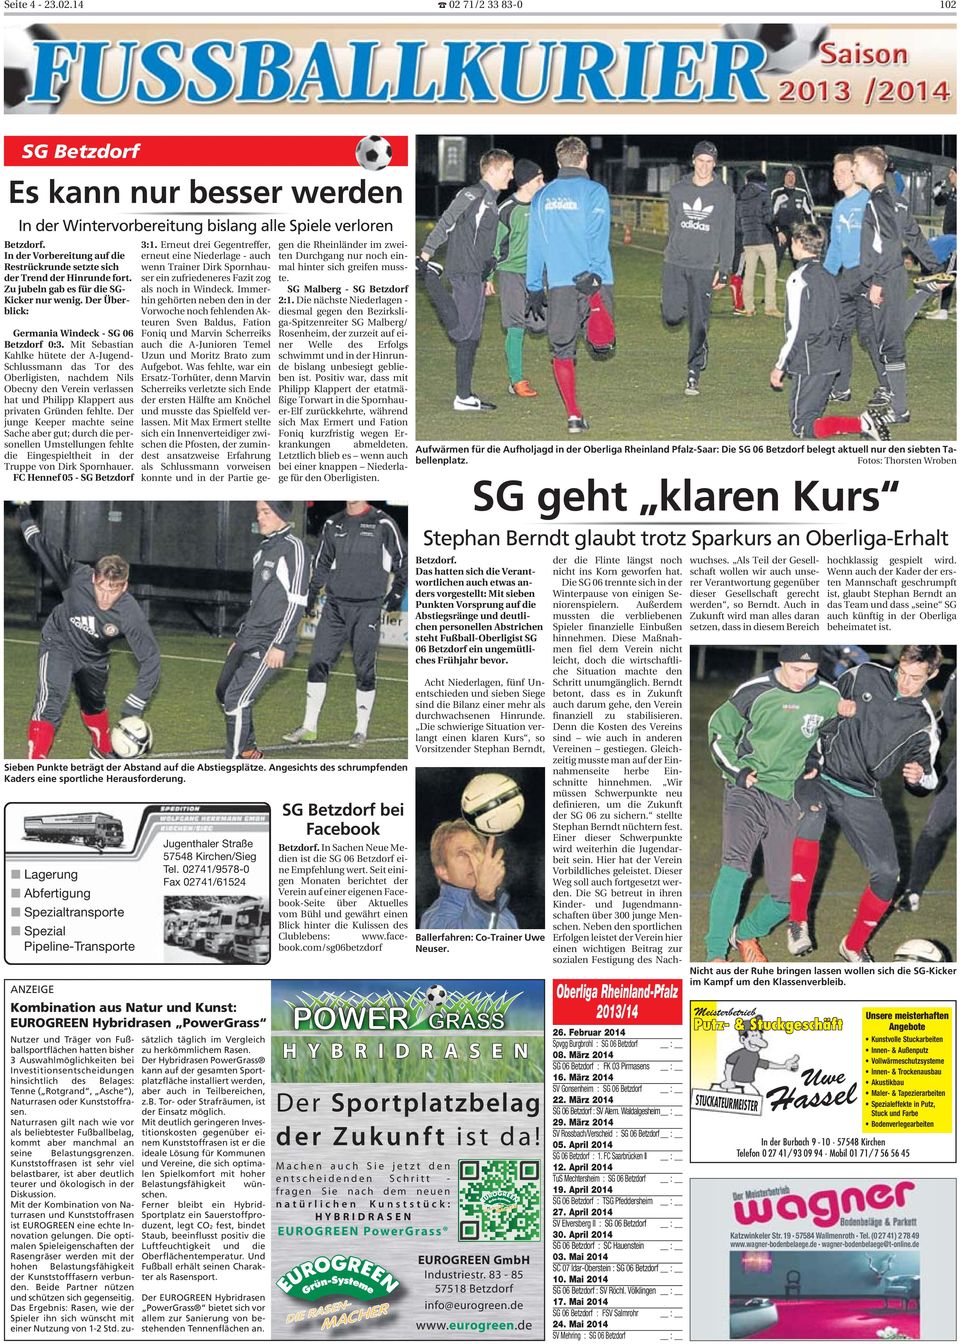 Mit Sebastian Kahlke hütete der A-Jugend- Schlussmann das Tor des Oberligisten, nachdem Nils Obecny den Verein verlassen hat und Philipp Klappert aus privaten Gründen fehlte.